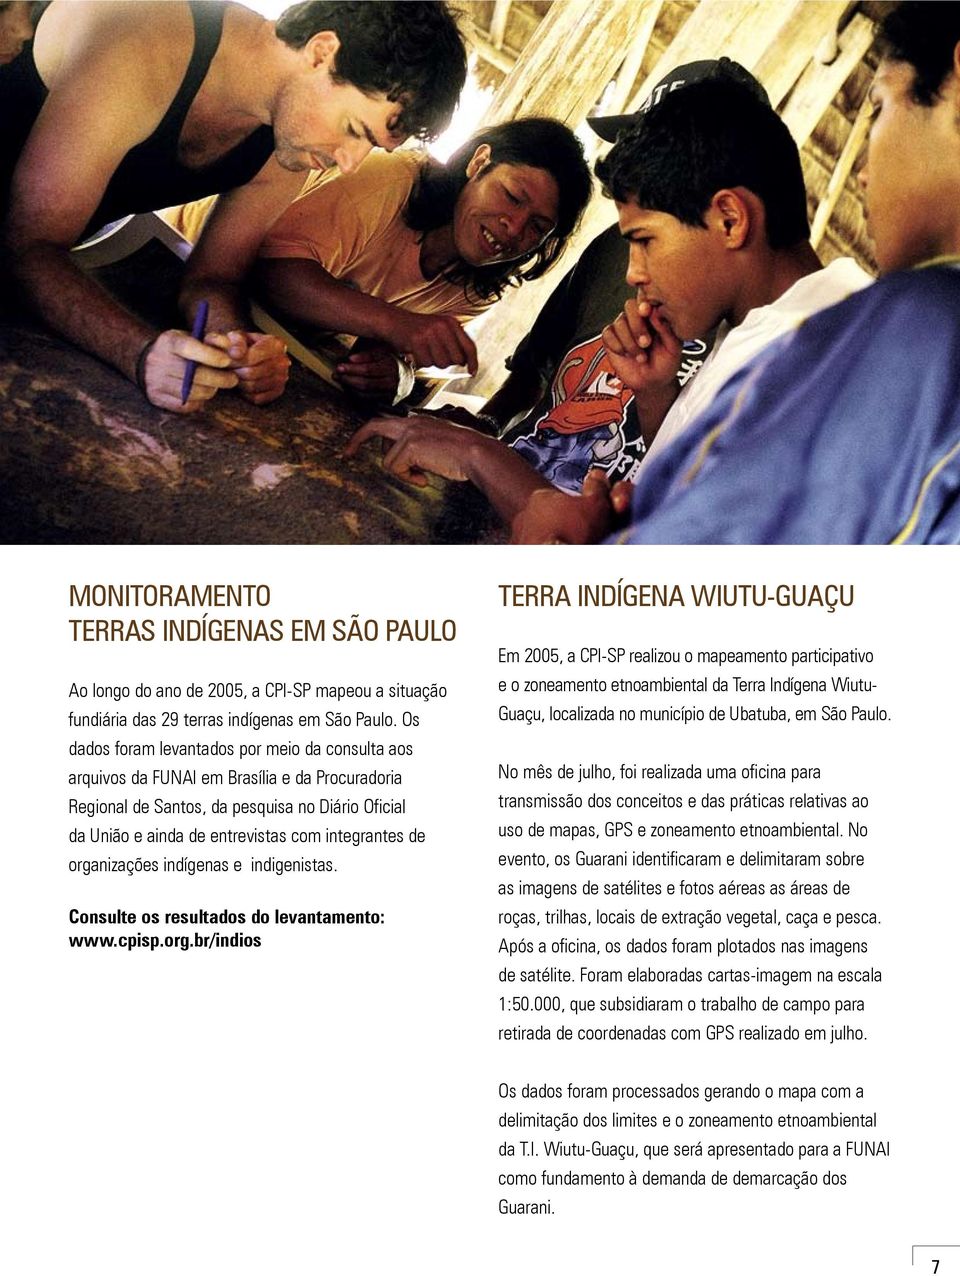 organizações indígenas e indigenistas. Consulte os resultados do levantamento: www.cpisp.org.br/indios TERRA INDÍGENA WIUTU-GUAÇU Em 2005, a CPI-SP realizou o mapeamento participativo e o zoneamento